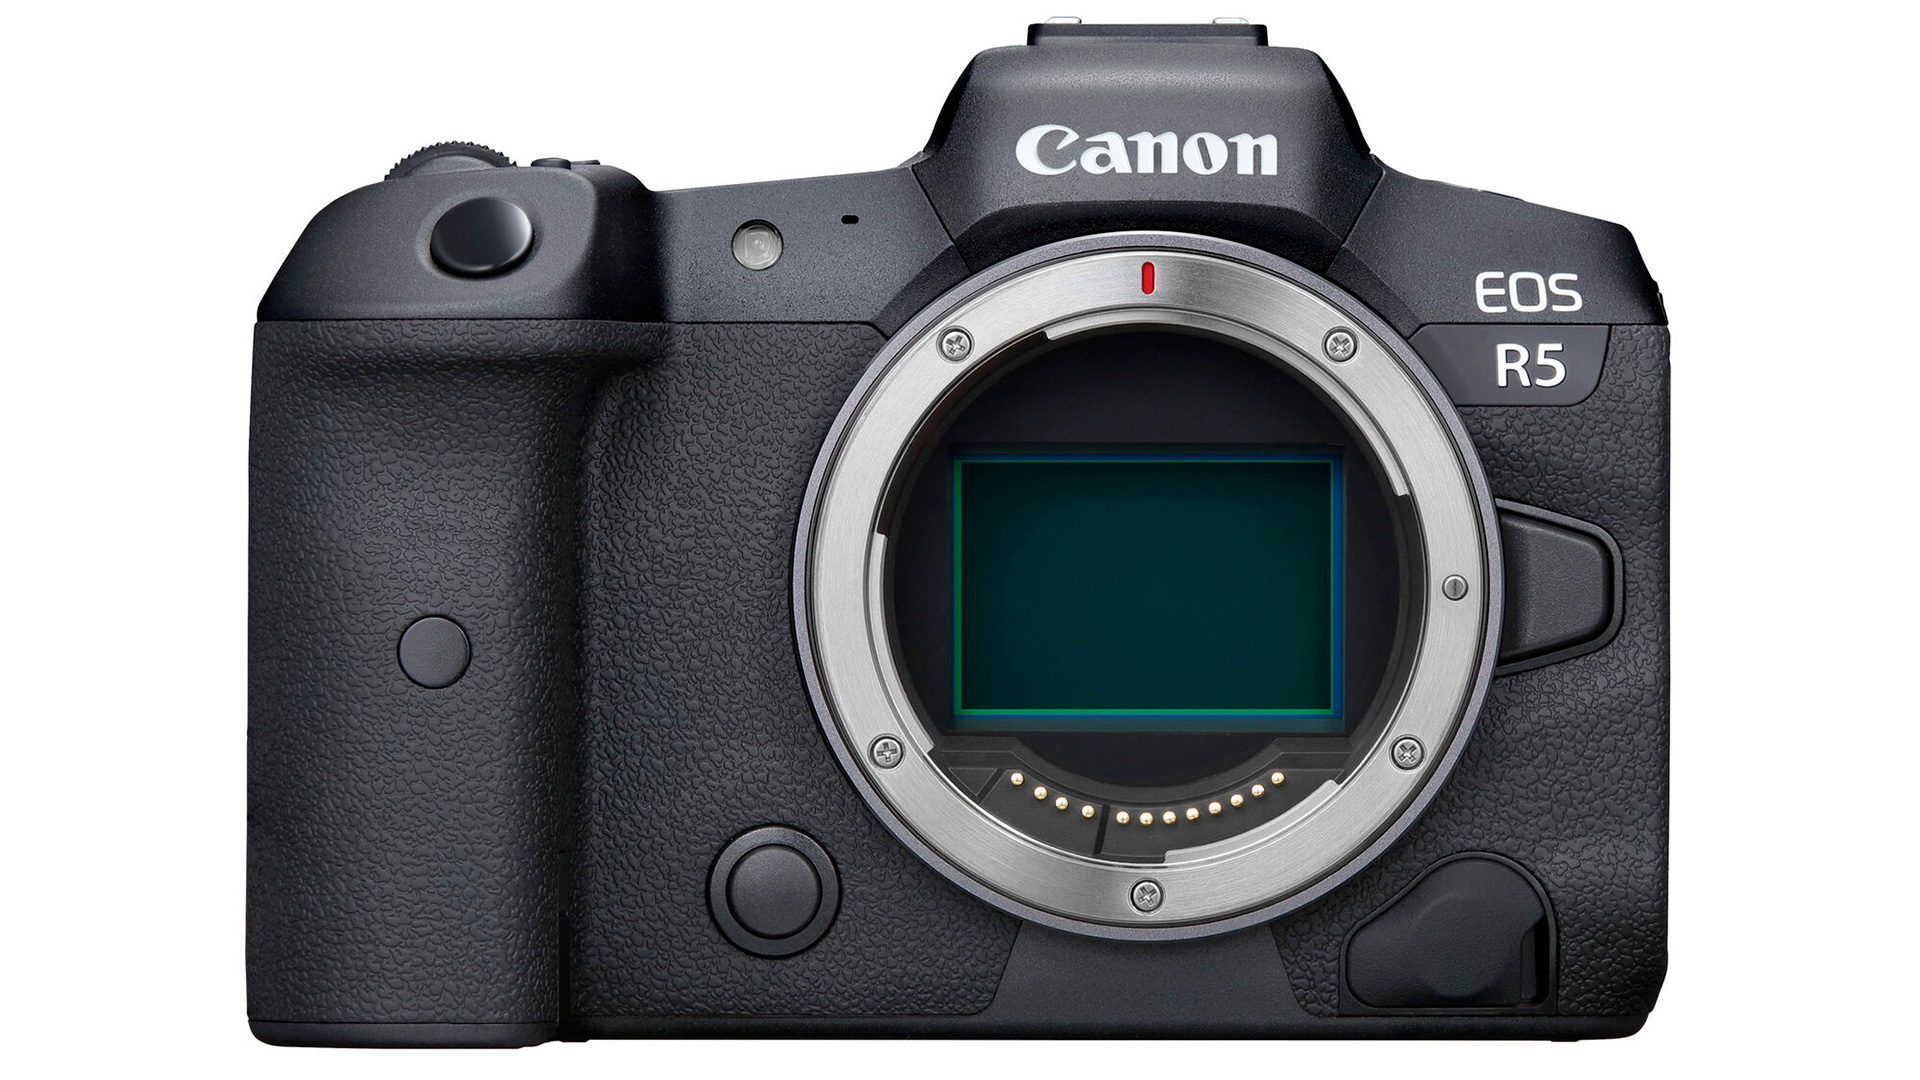 Best Canon camera: Canon EOS R5